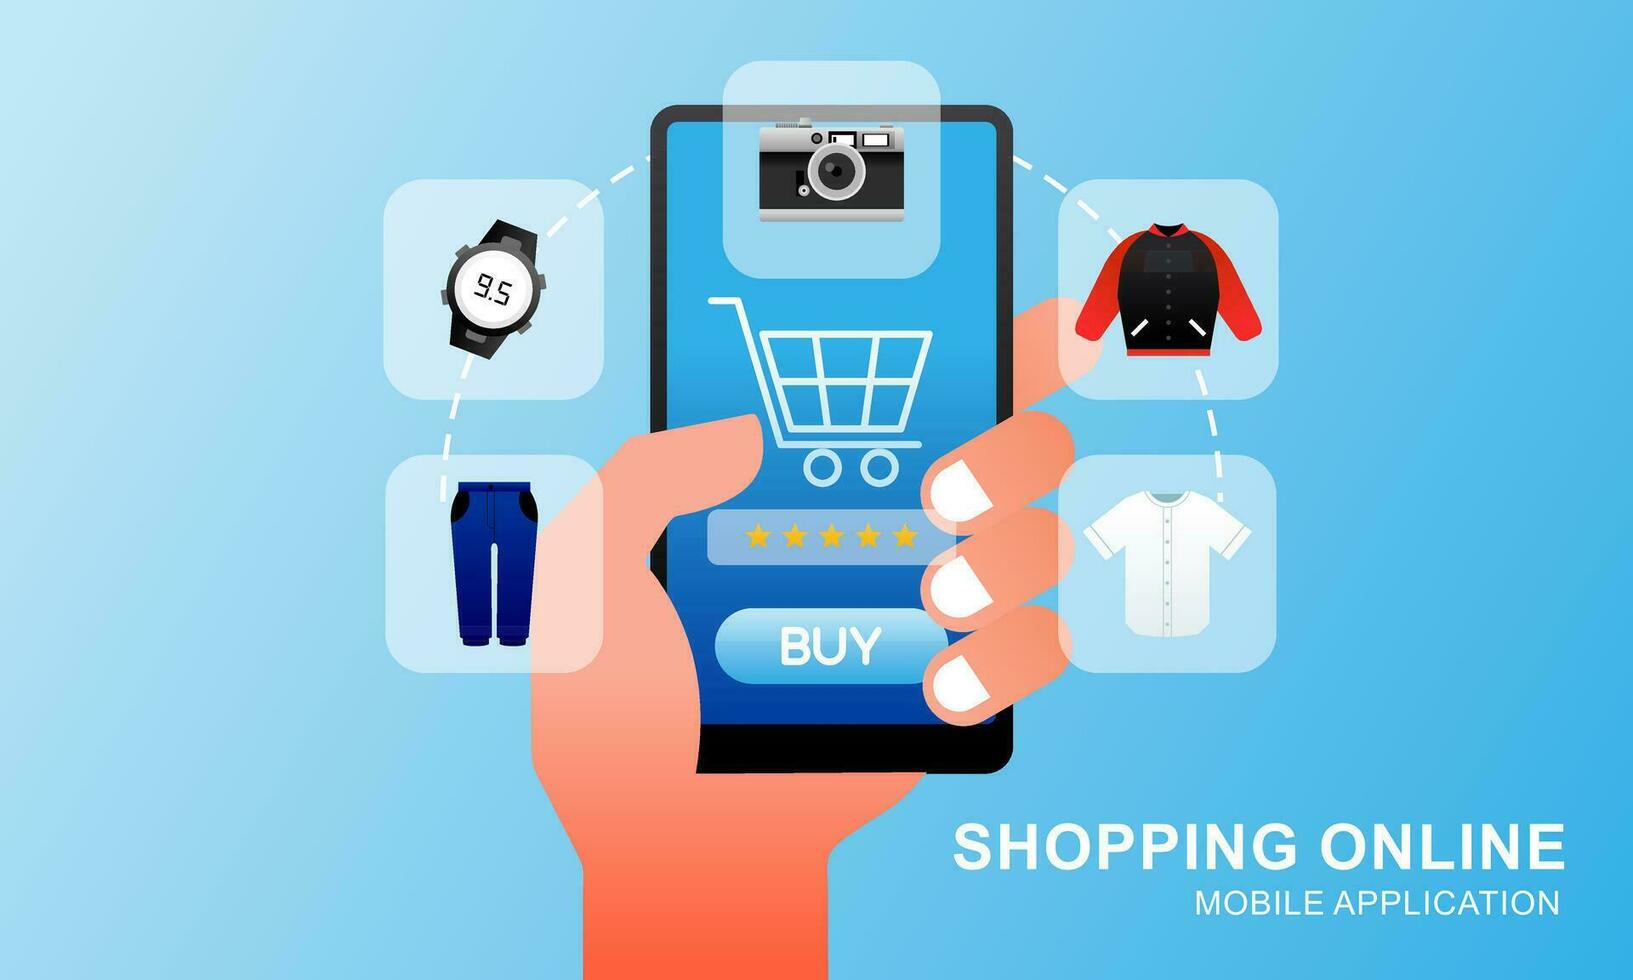 compras conectados em local na rede Internet dentro Móvel aplicativo. digital conectados marketing conceito vetor